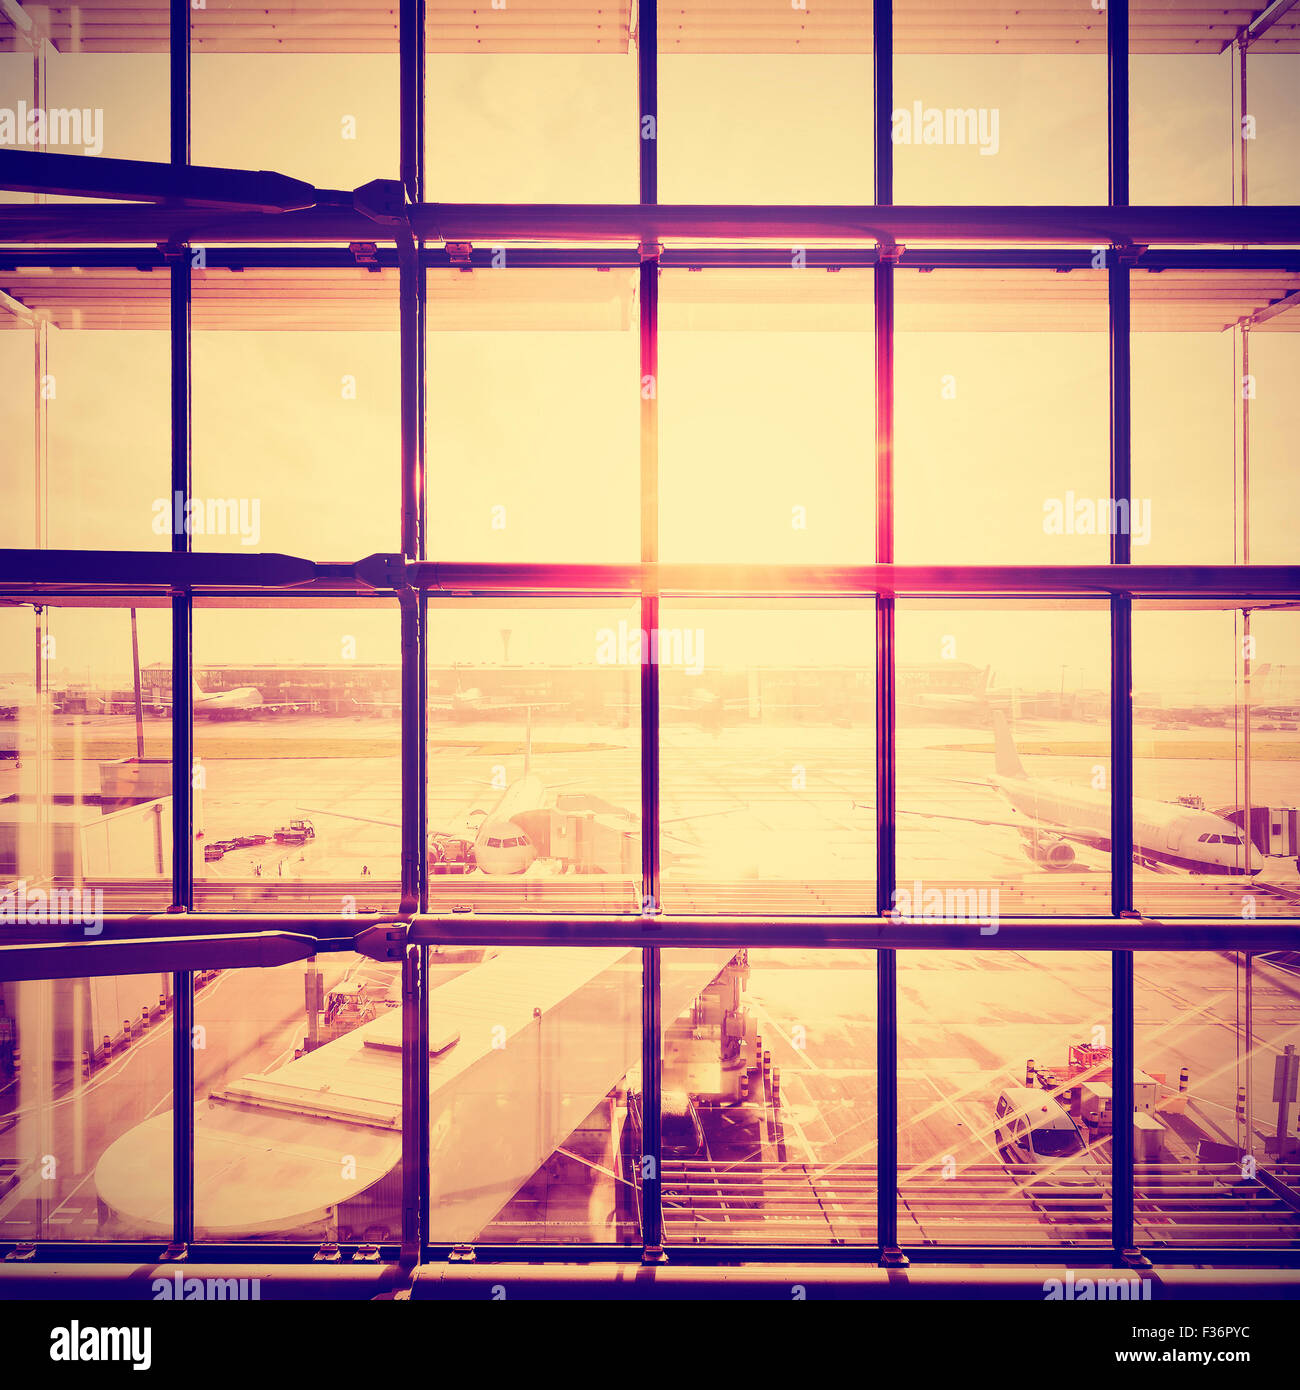 Imagen estilizada Instagram de un aeropuerto, el transporte y los viajes de negocios concepto. Foto de stock